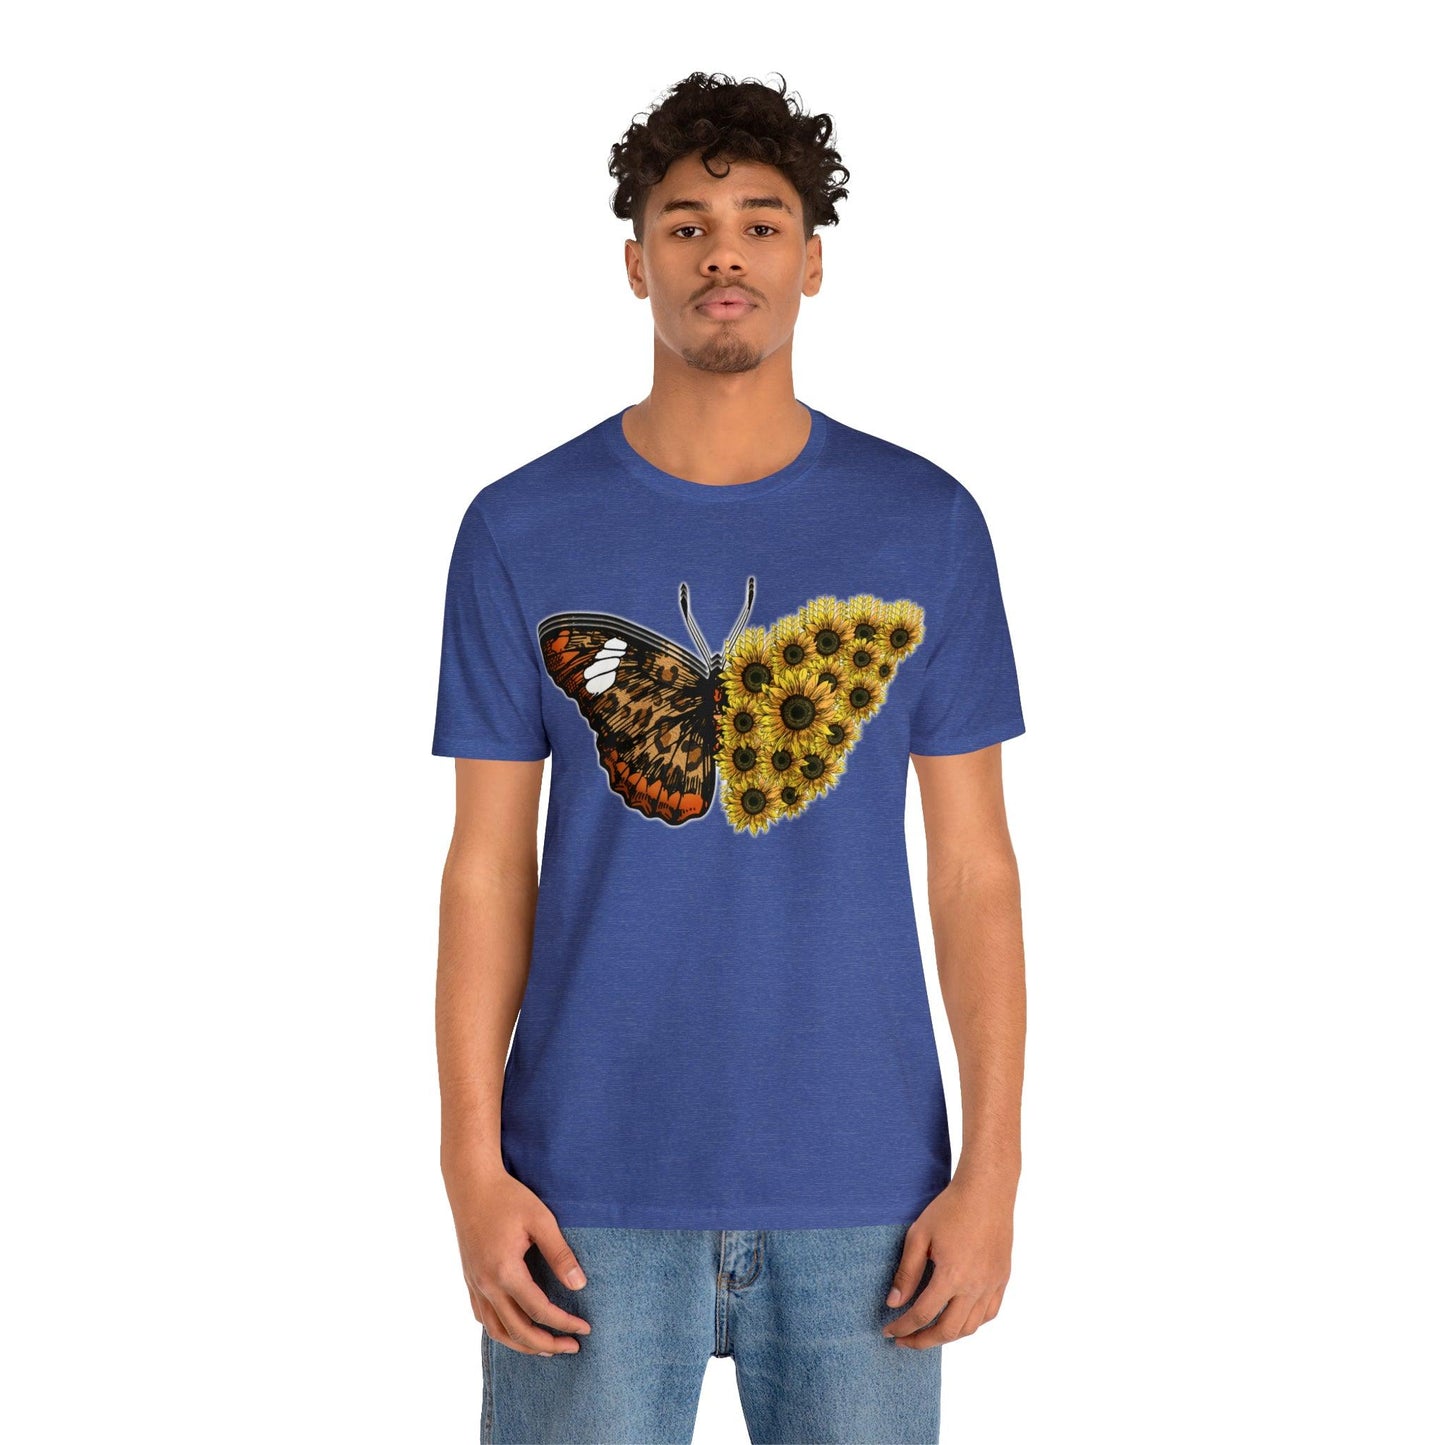 Butterfly Shirt, Sunflower Shirt, Insect Shirt Nature love T shirtFloral Tee Shirt, Flower Shirt, Garden Shirt, Womens Fall Summer shirt